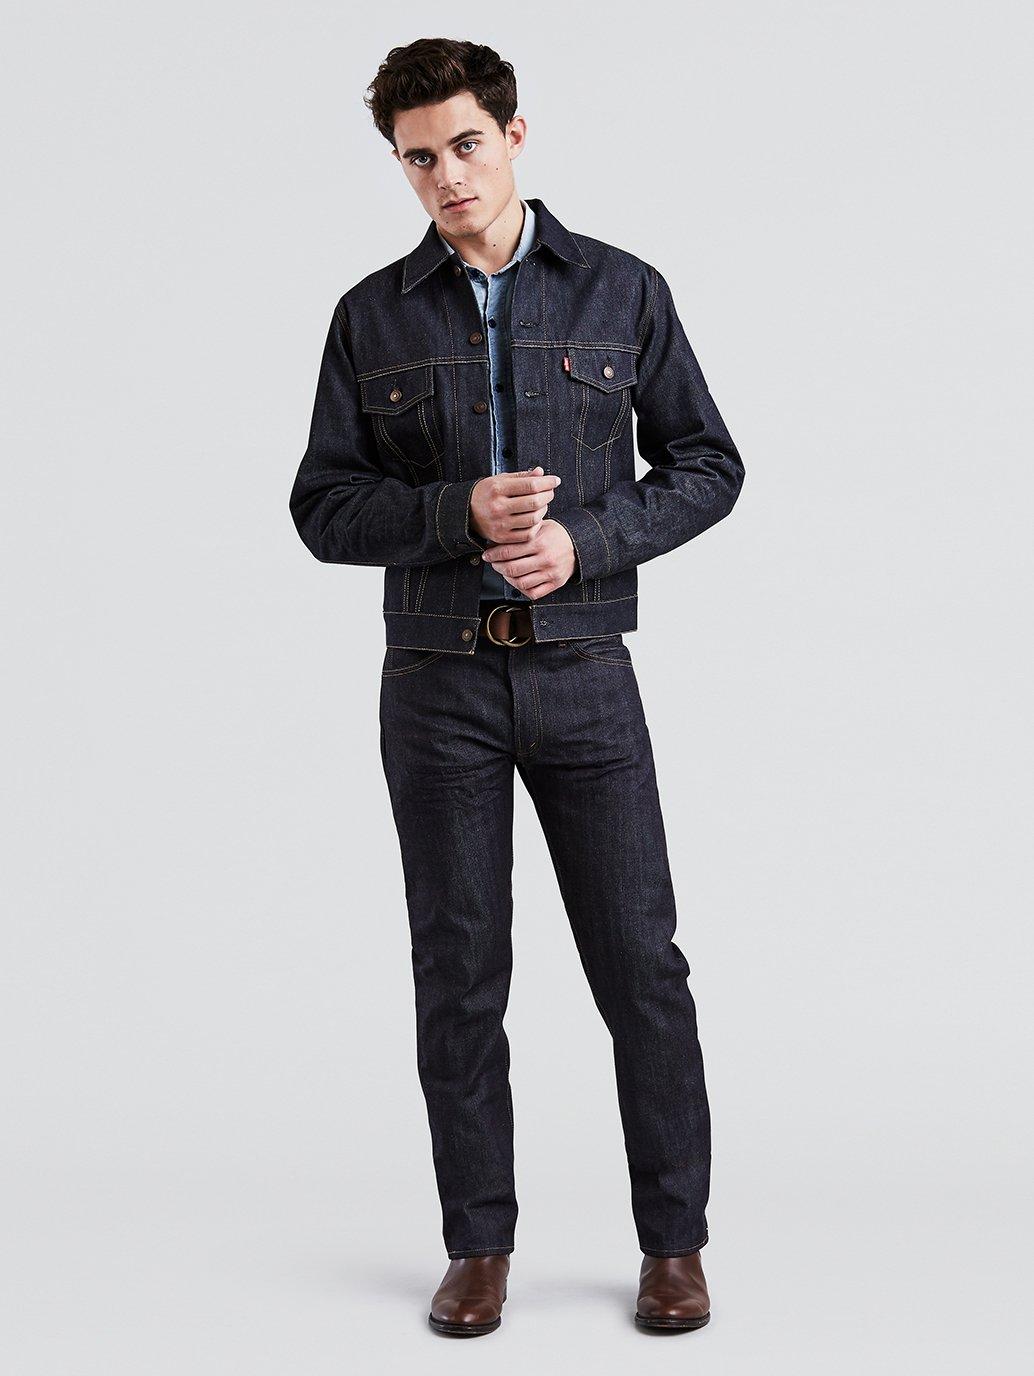 Buy Levi's® Vintage Clothing Men's 1967 505® Jeans | Levi’s® Official ...